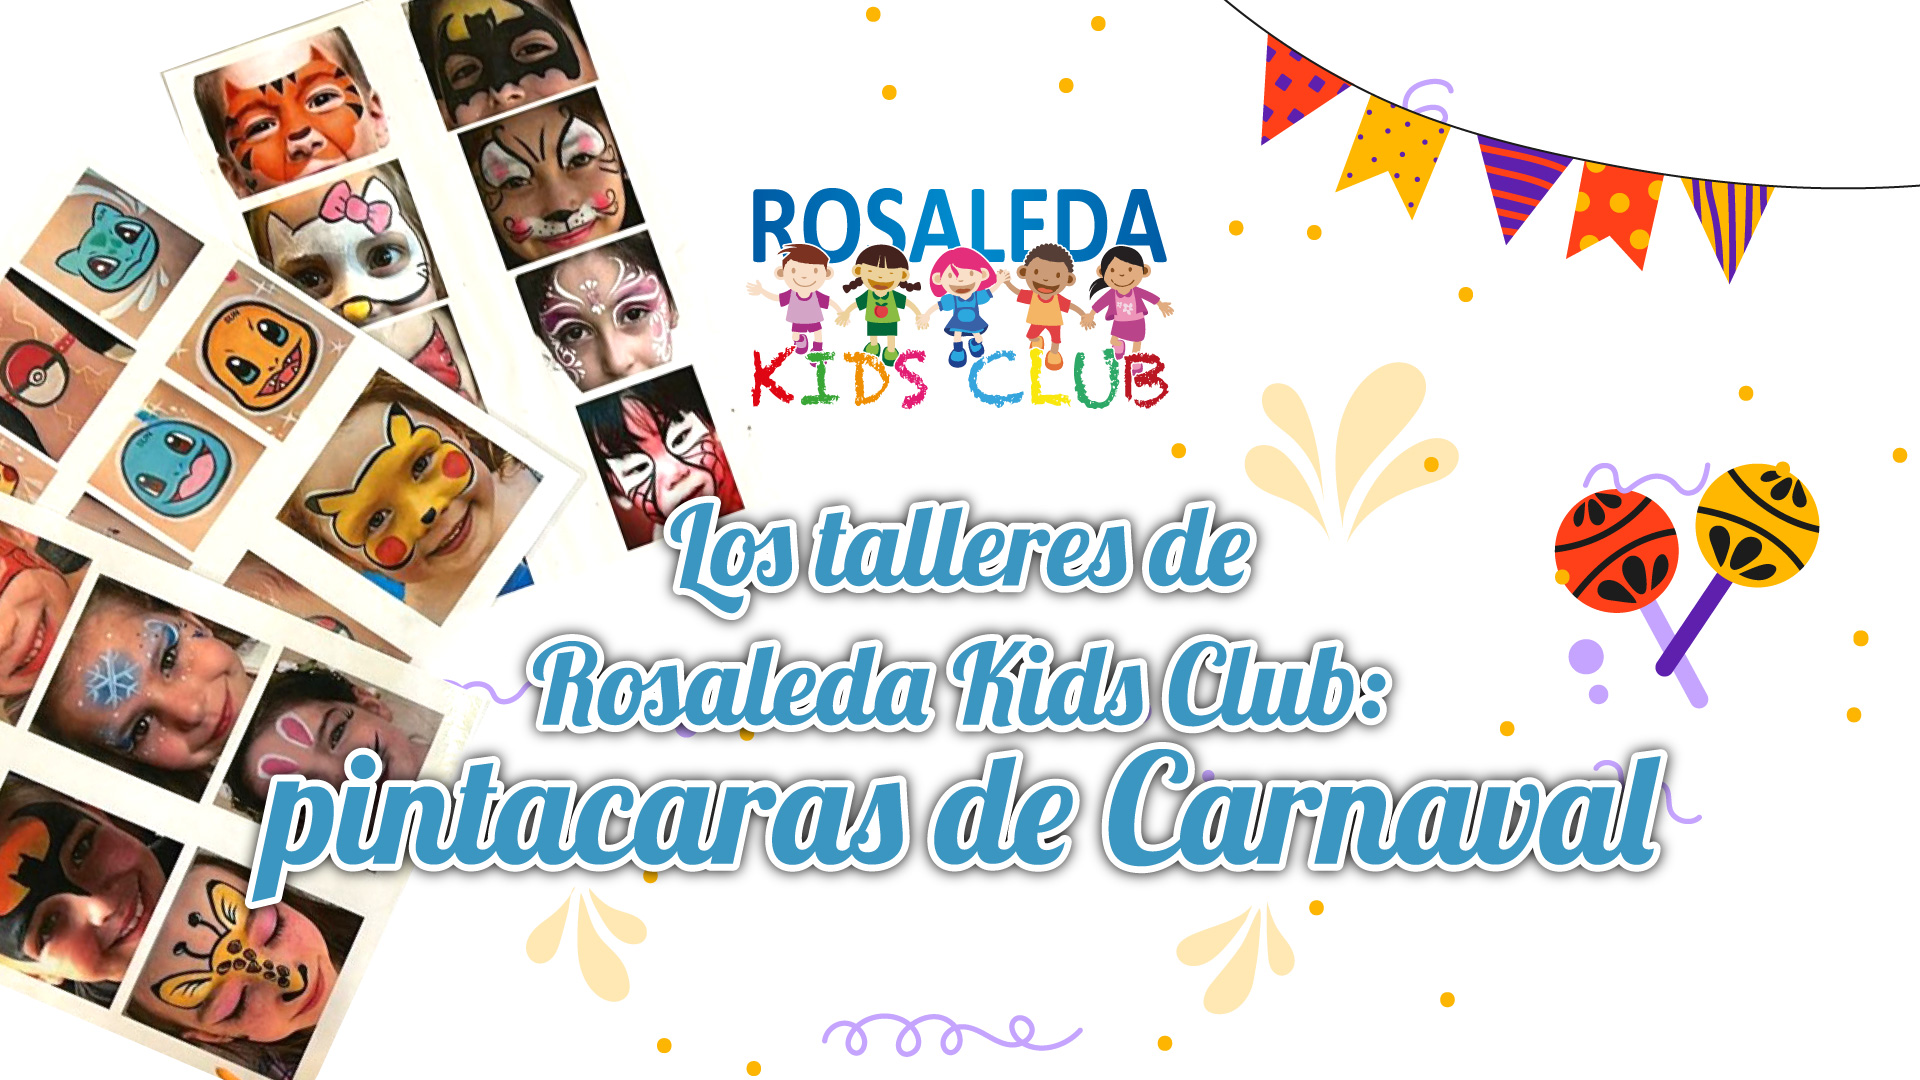 Los talleres de Rosaleda Kids Club: pintacaras Carnaval